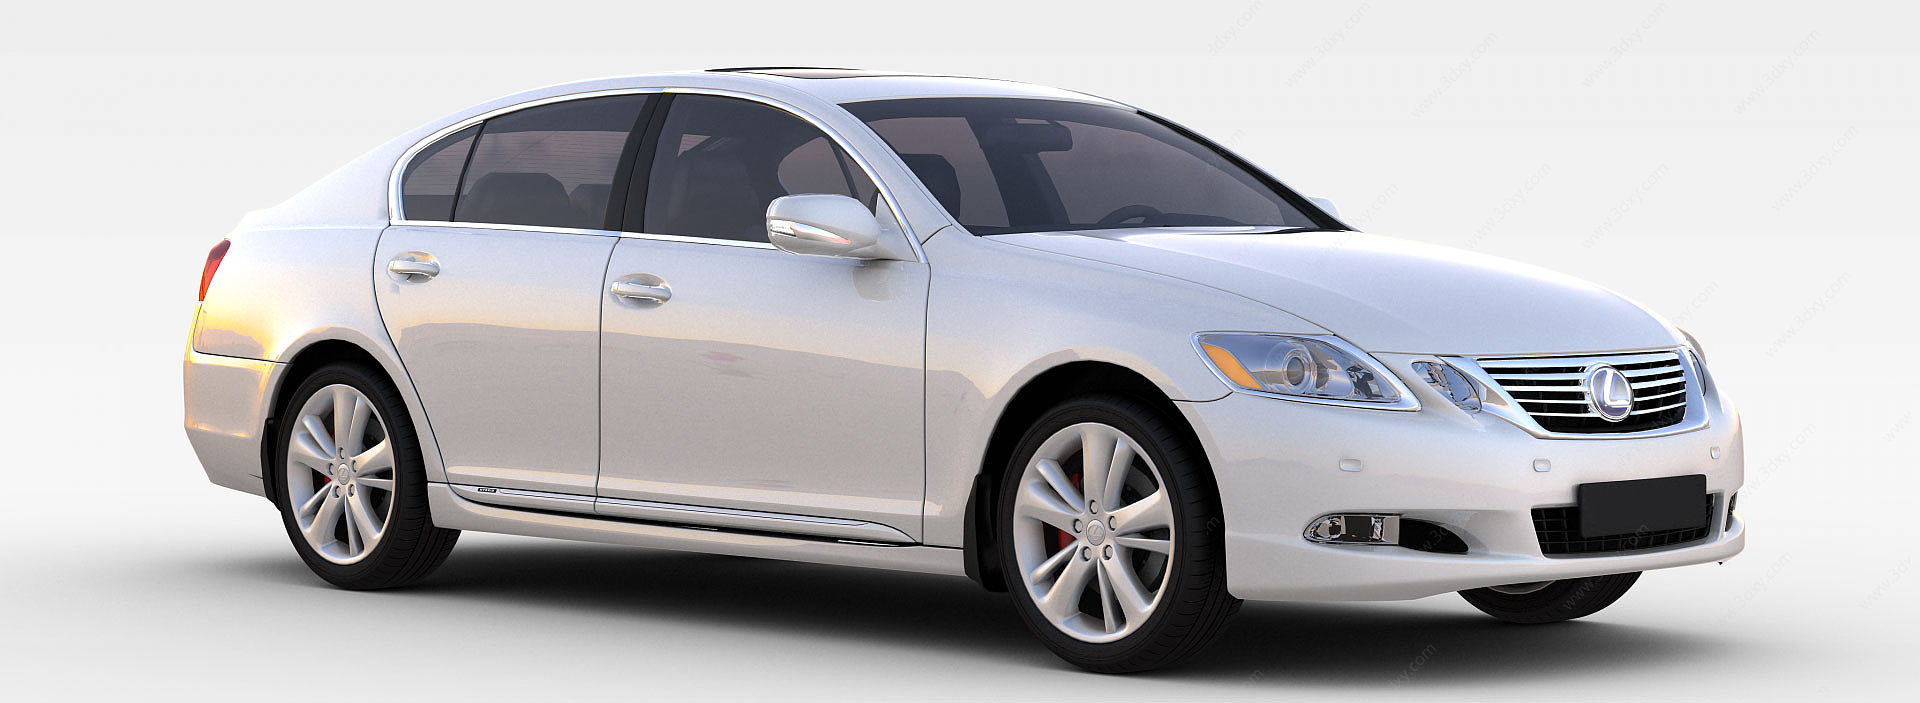 雷克萨斯银色汽车3D模型